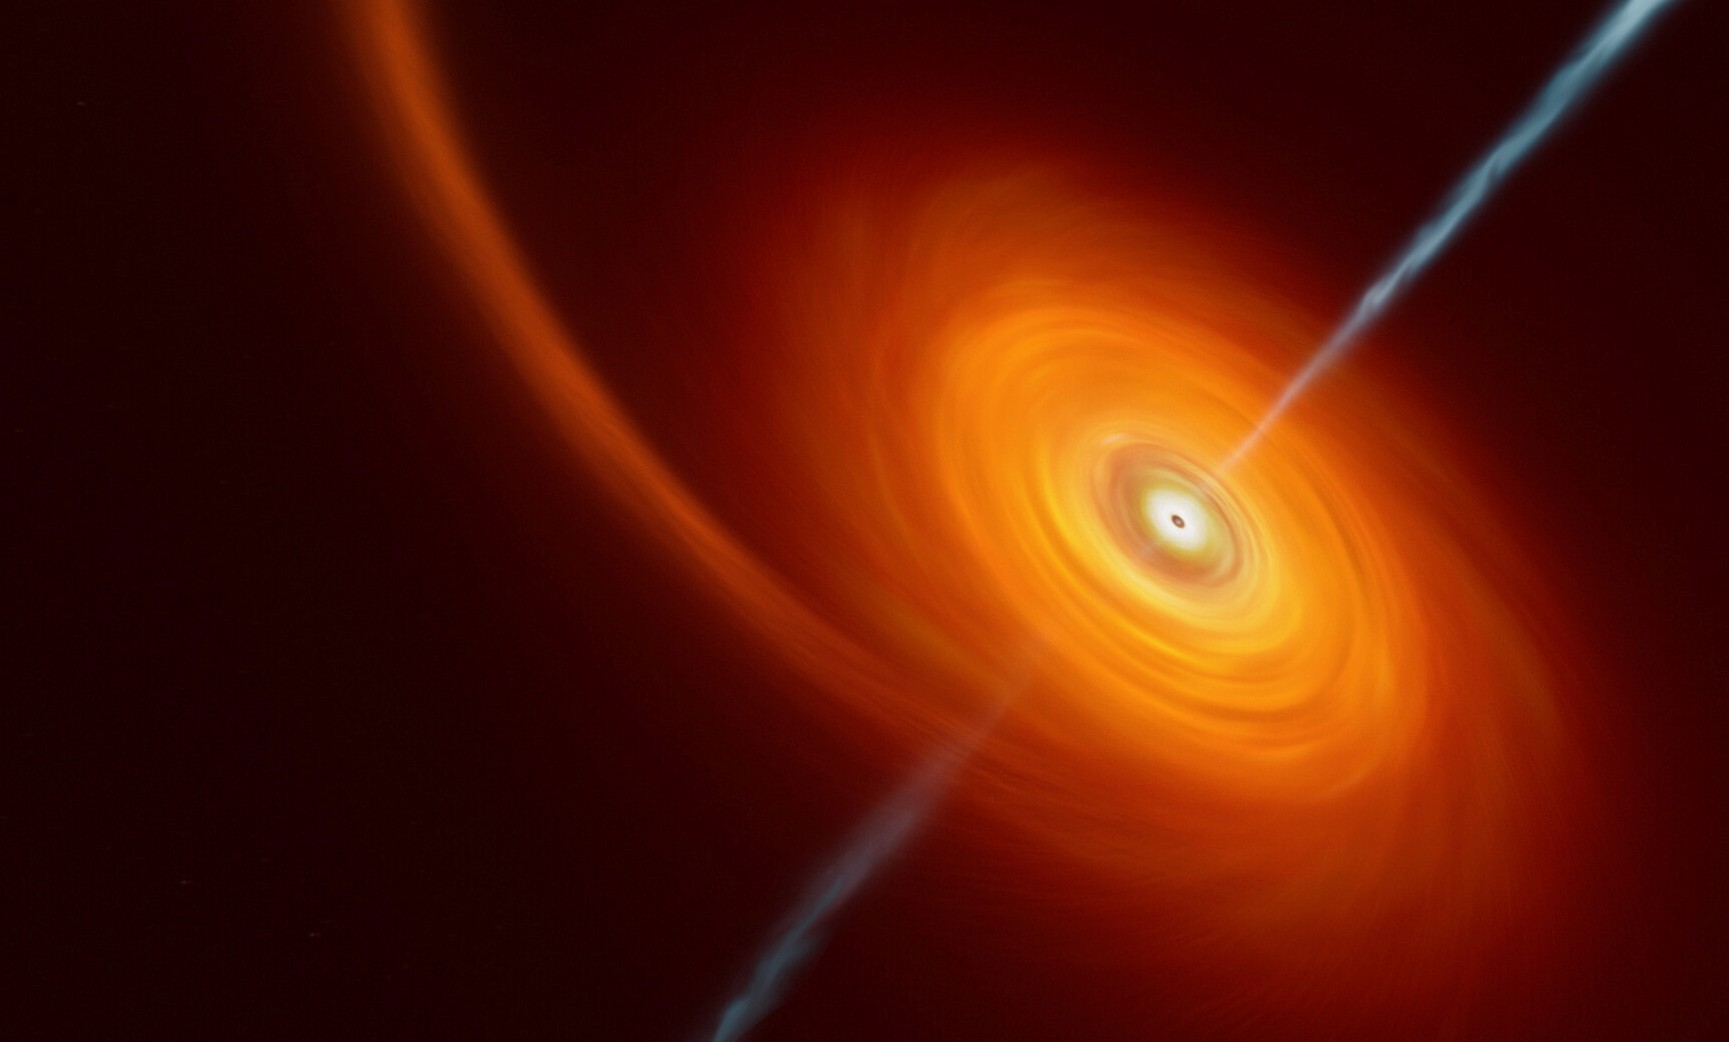 Cette vue d'artiste illustre ce qui se passe lorsqu'une étoile s'approche trop près d'un trou noir, où elle est comprimée par son intense attraction gravitationnelle. Une partie de la matière de l'étoile est aspirée et tourbillonne autour du trou noir, formant le disque que l'on peut voir sur cette image. Dans de rares cas, comme celui-ci, des jets de matière et de rayonnements sont projetés depuis les pôles du trou noir. Dans le cas de l'événement AT2022cmc, les preuves de ces jets ont été détectées par différents télescopes, dont le VLT, qui a déterminé qu'il s'agissait de l'exemple le plus éloigné d'un tel événement. © M.Kornmesser, ESO